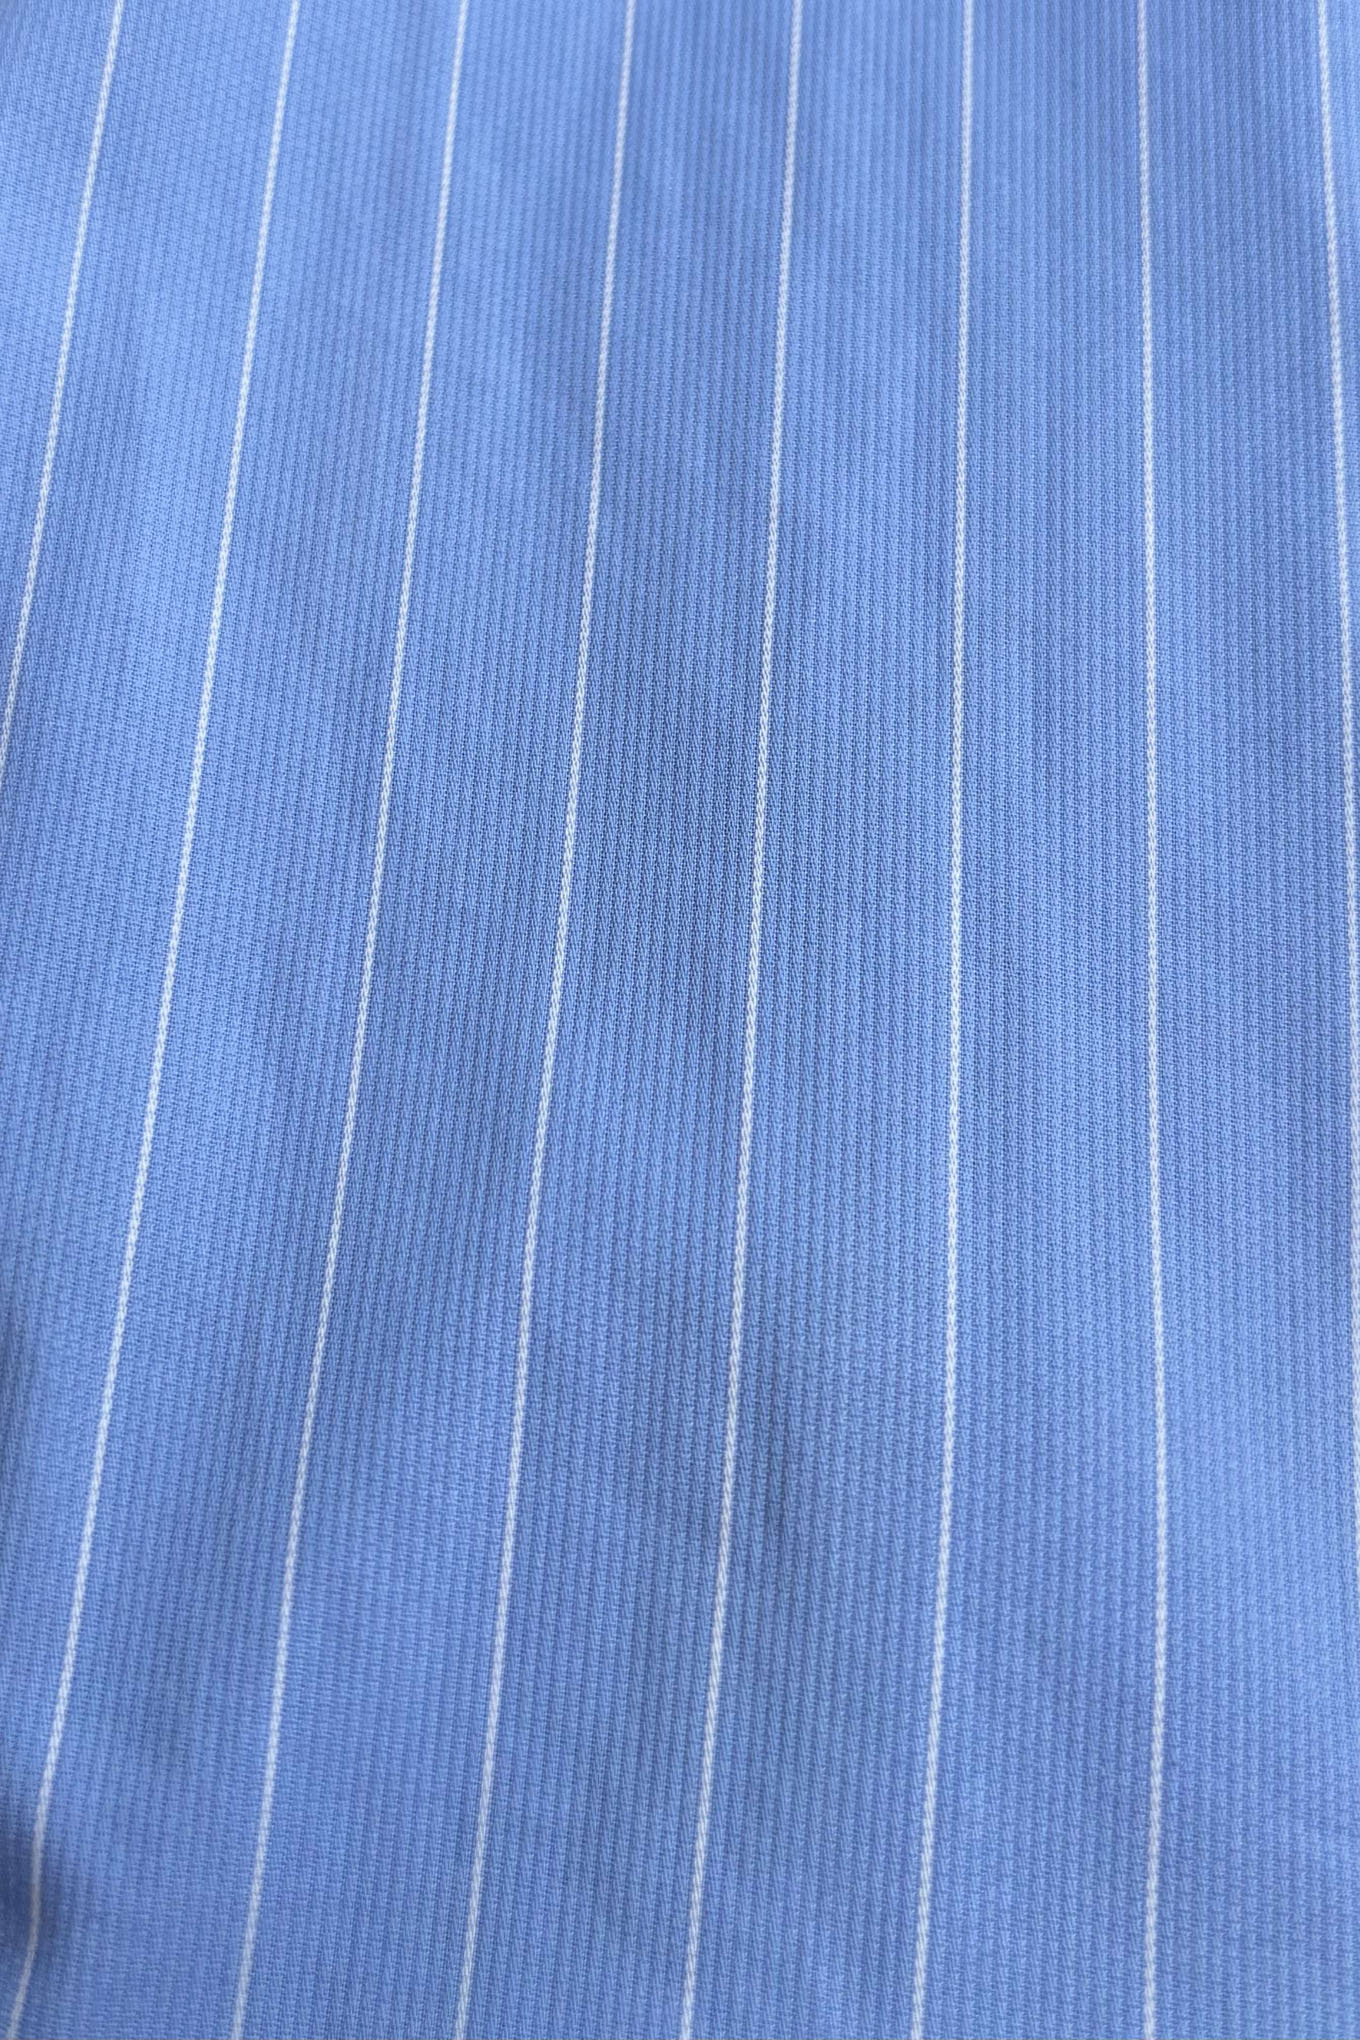 Blue Striped Shirt & Skater Skort Set